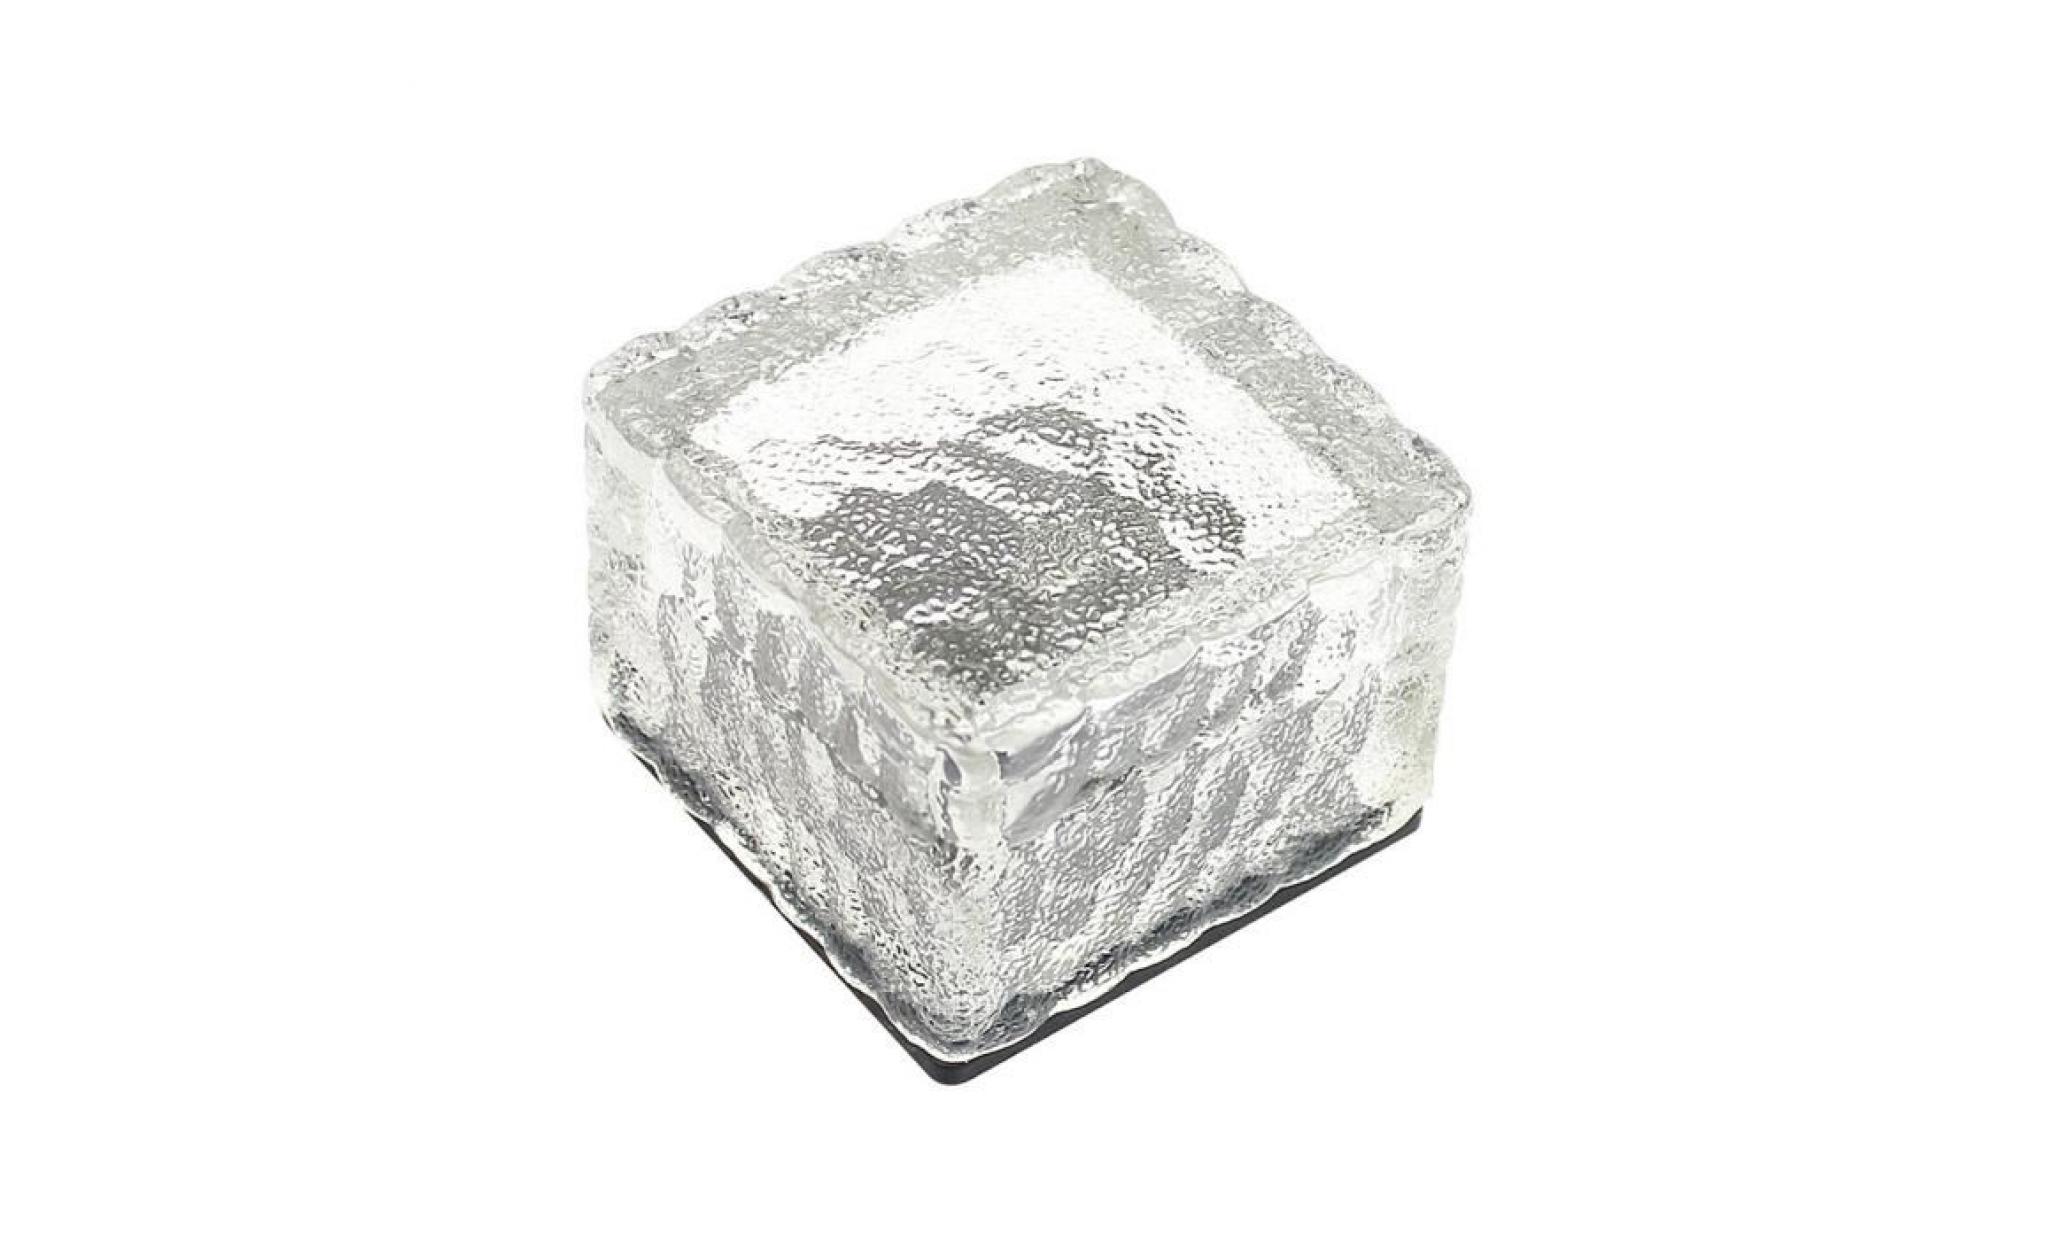 led énergie solaire change de couleur ice cube en cristal extérieur en verre brique hot lights anonywego881 pas cher